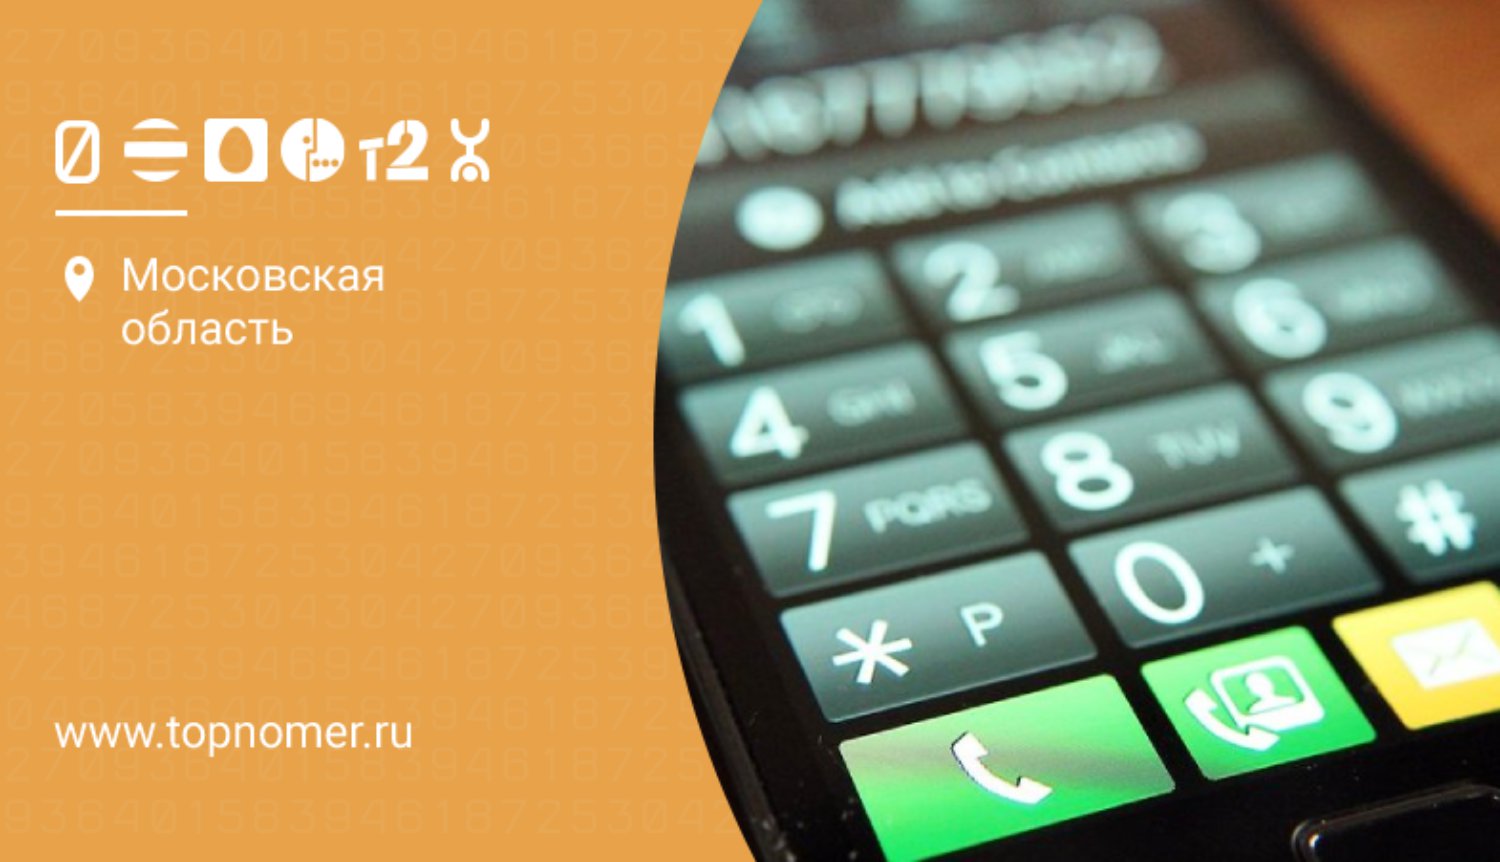 Код россии для телеграмма мобильный телефон бесплатно на русском языке фото 106